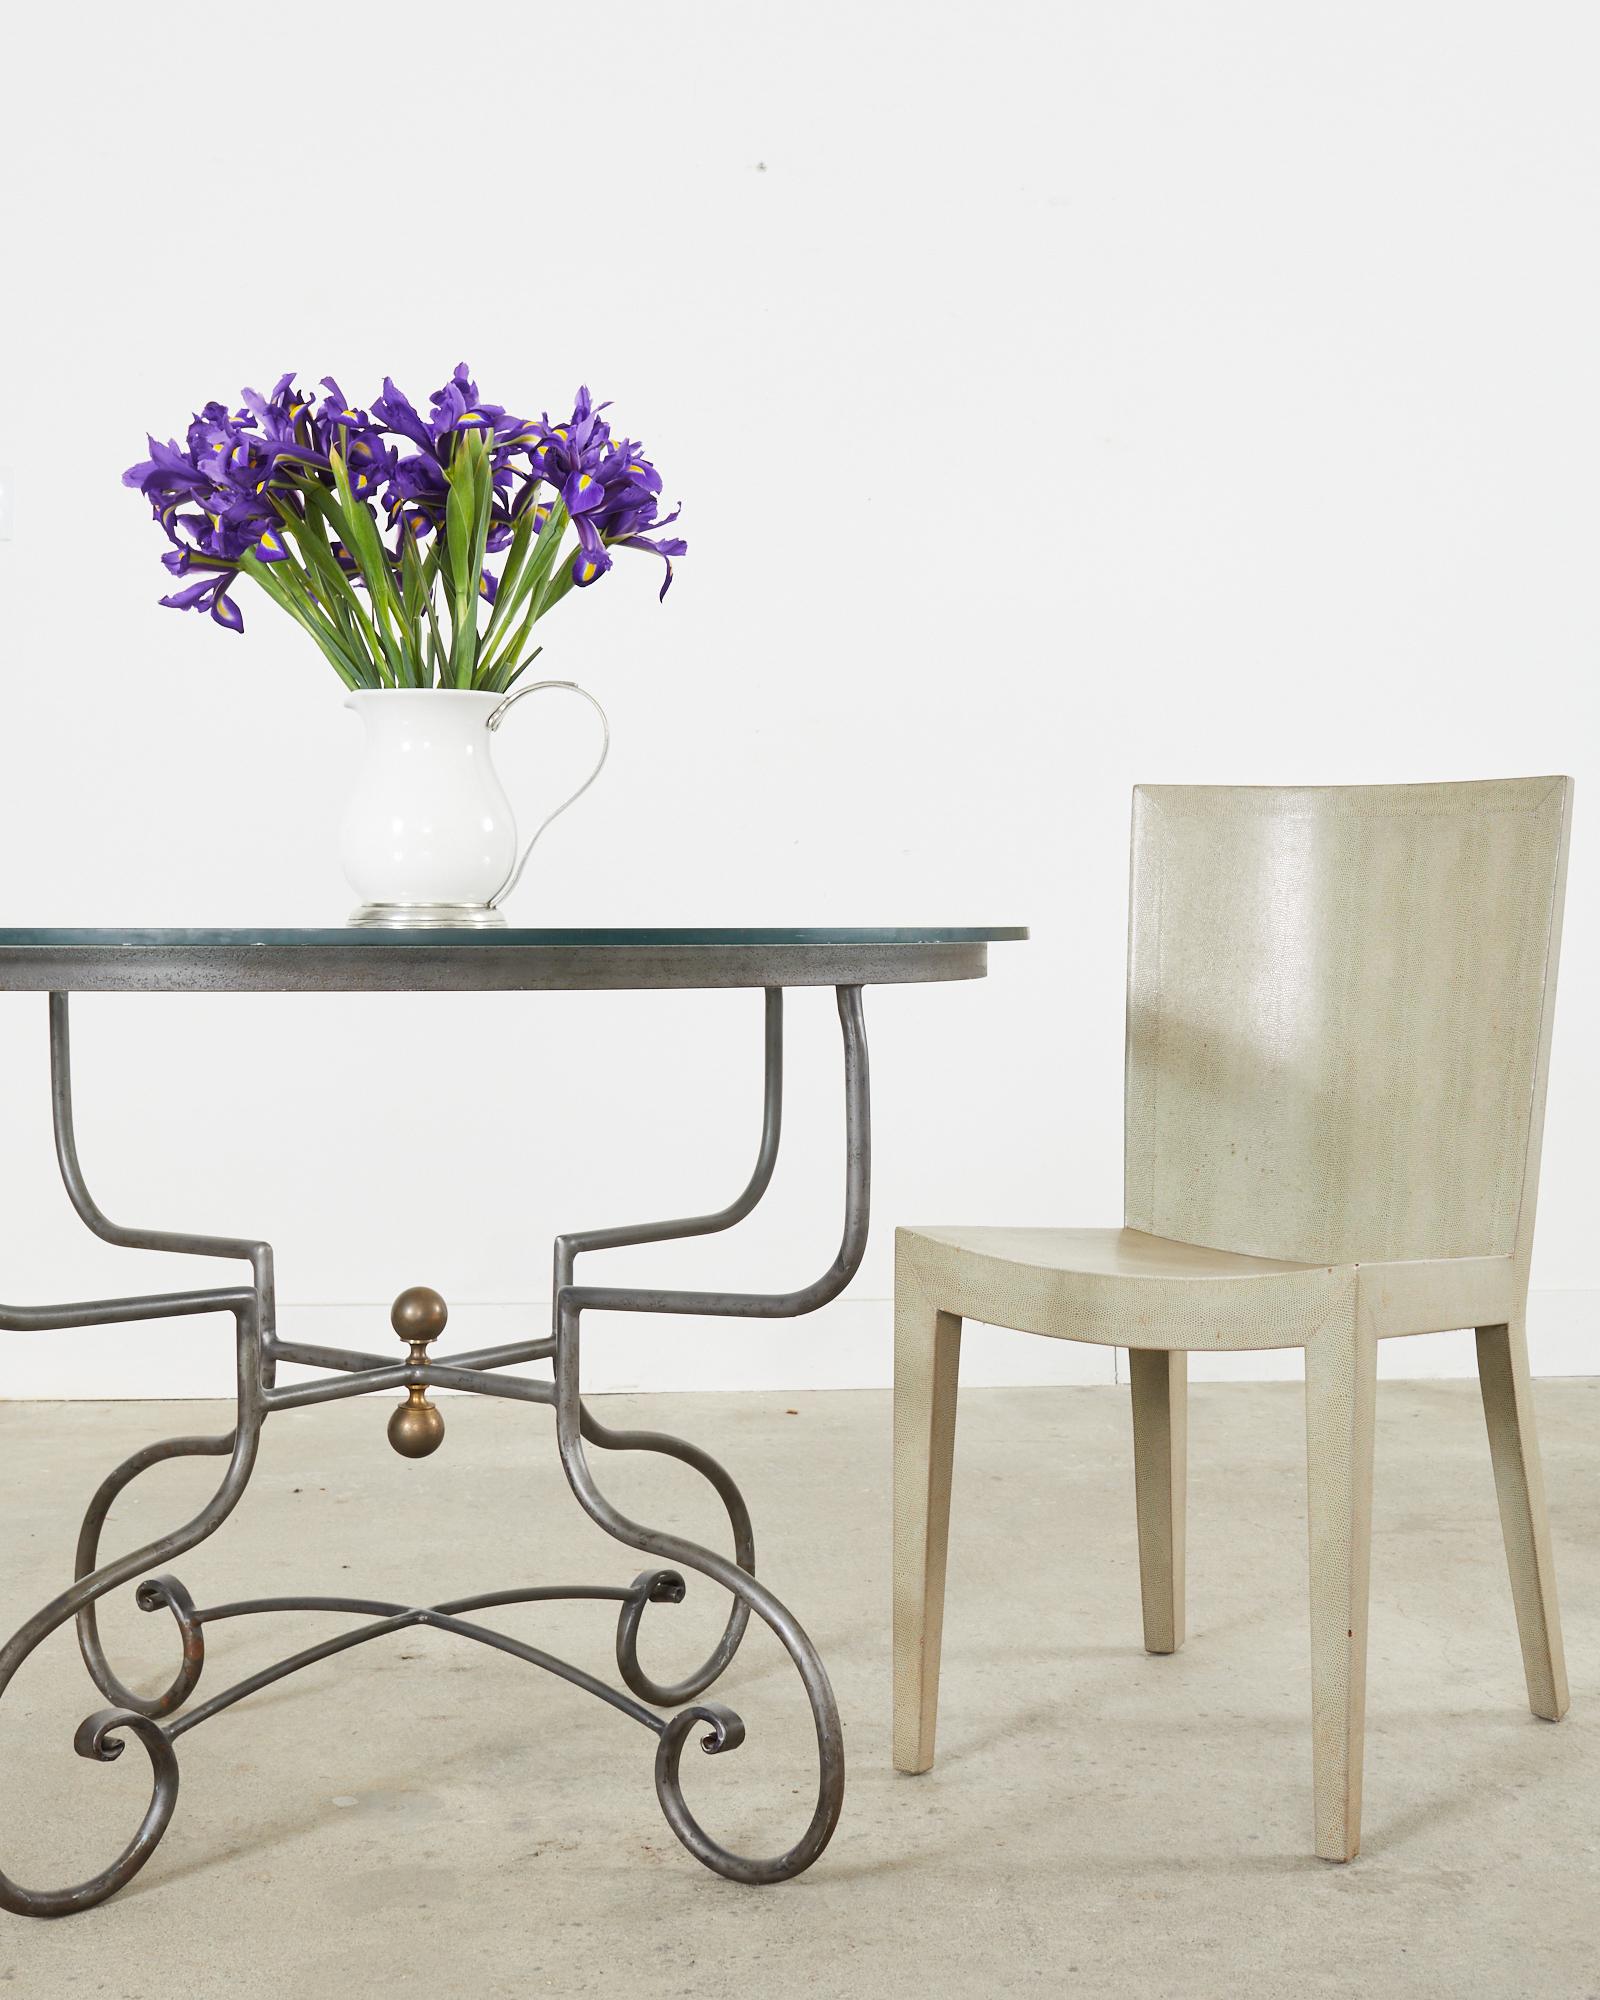 Stilvoller JMF-Stuhl von Karl Springer mit einem beeindruckenden, geprägten Eidechsenlederfurnier. Signiert und datiert auf dem Boden 1984 mit ausgezeichneten Tischlerarbeiten und Handwerkskunst. Das Leder hat eine schöne alte Patina mit geringem